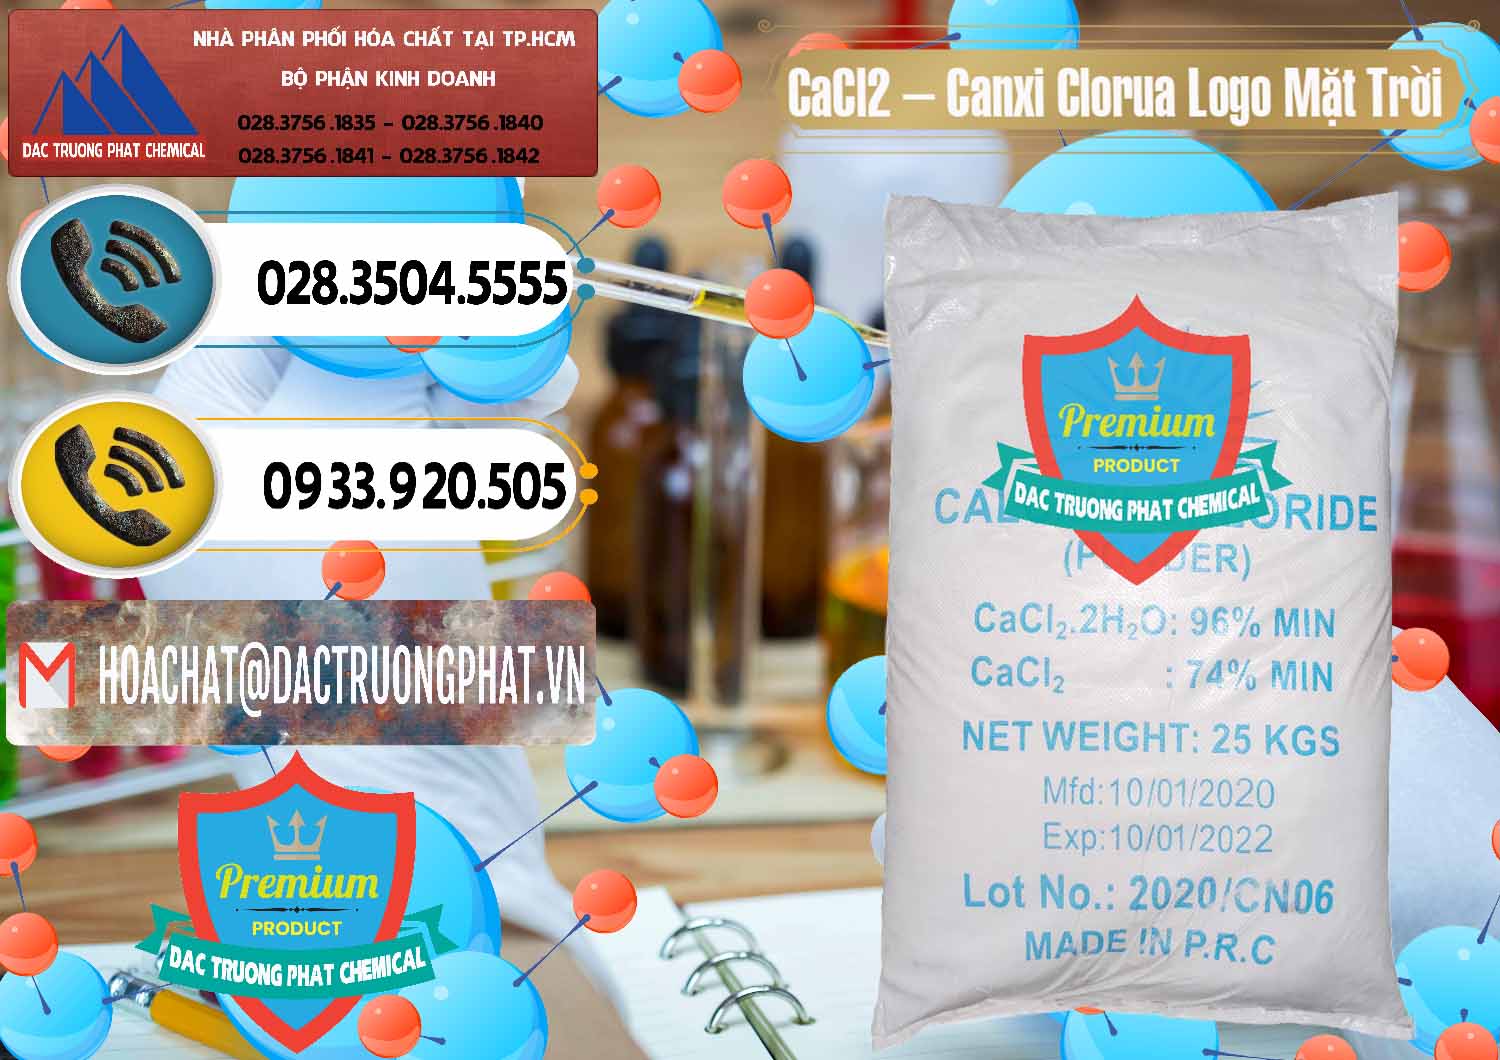 Chuyên cung ứng & bán CaCl2 – Canxi Clorua 96% Logo Mặt Trời Trung Quốc China - 0041 - Nơi nhập khẩu và cung cấp hóa chất tại TP.HCM - hoachatdetnhuom.vn